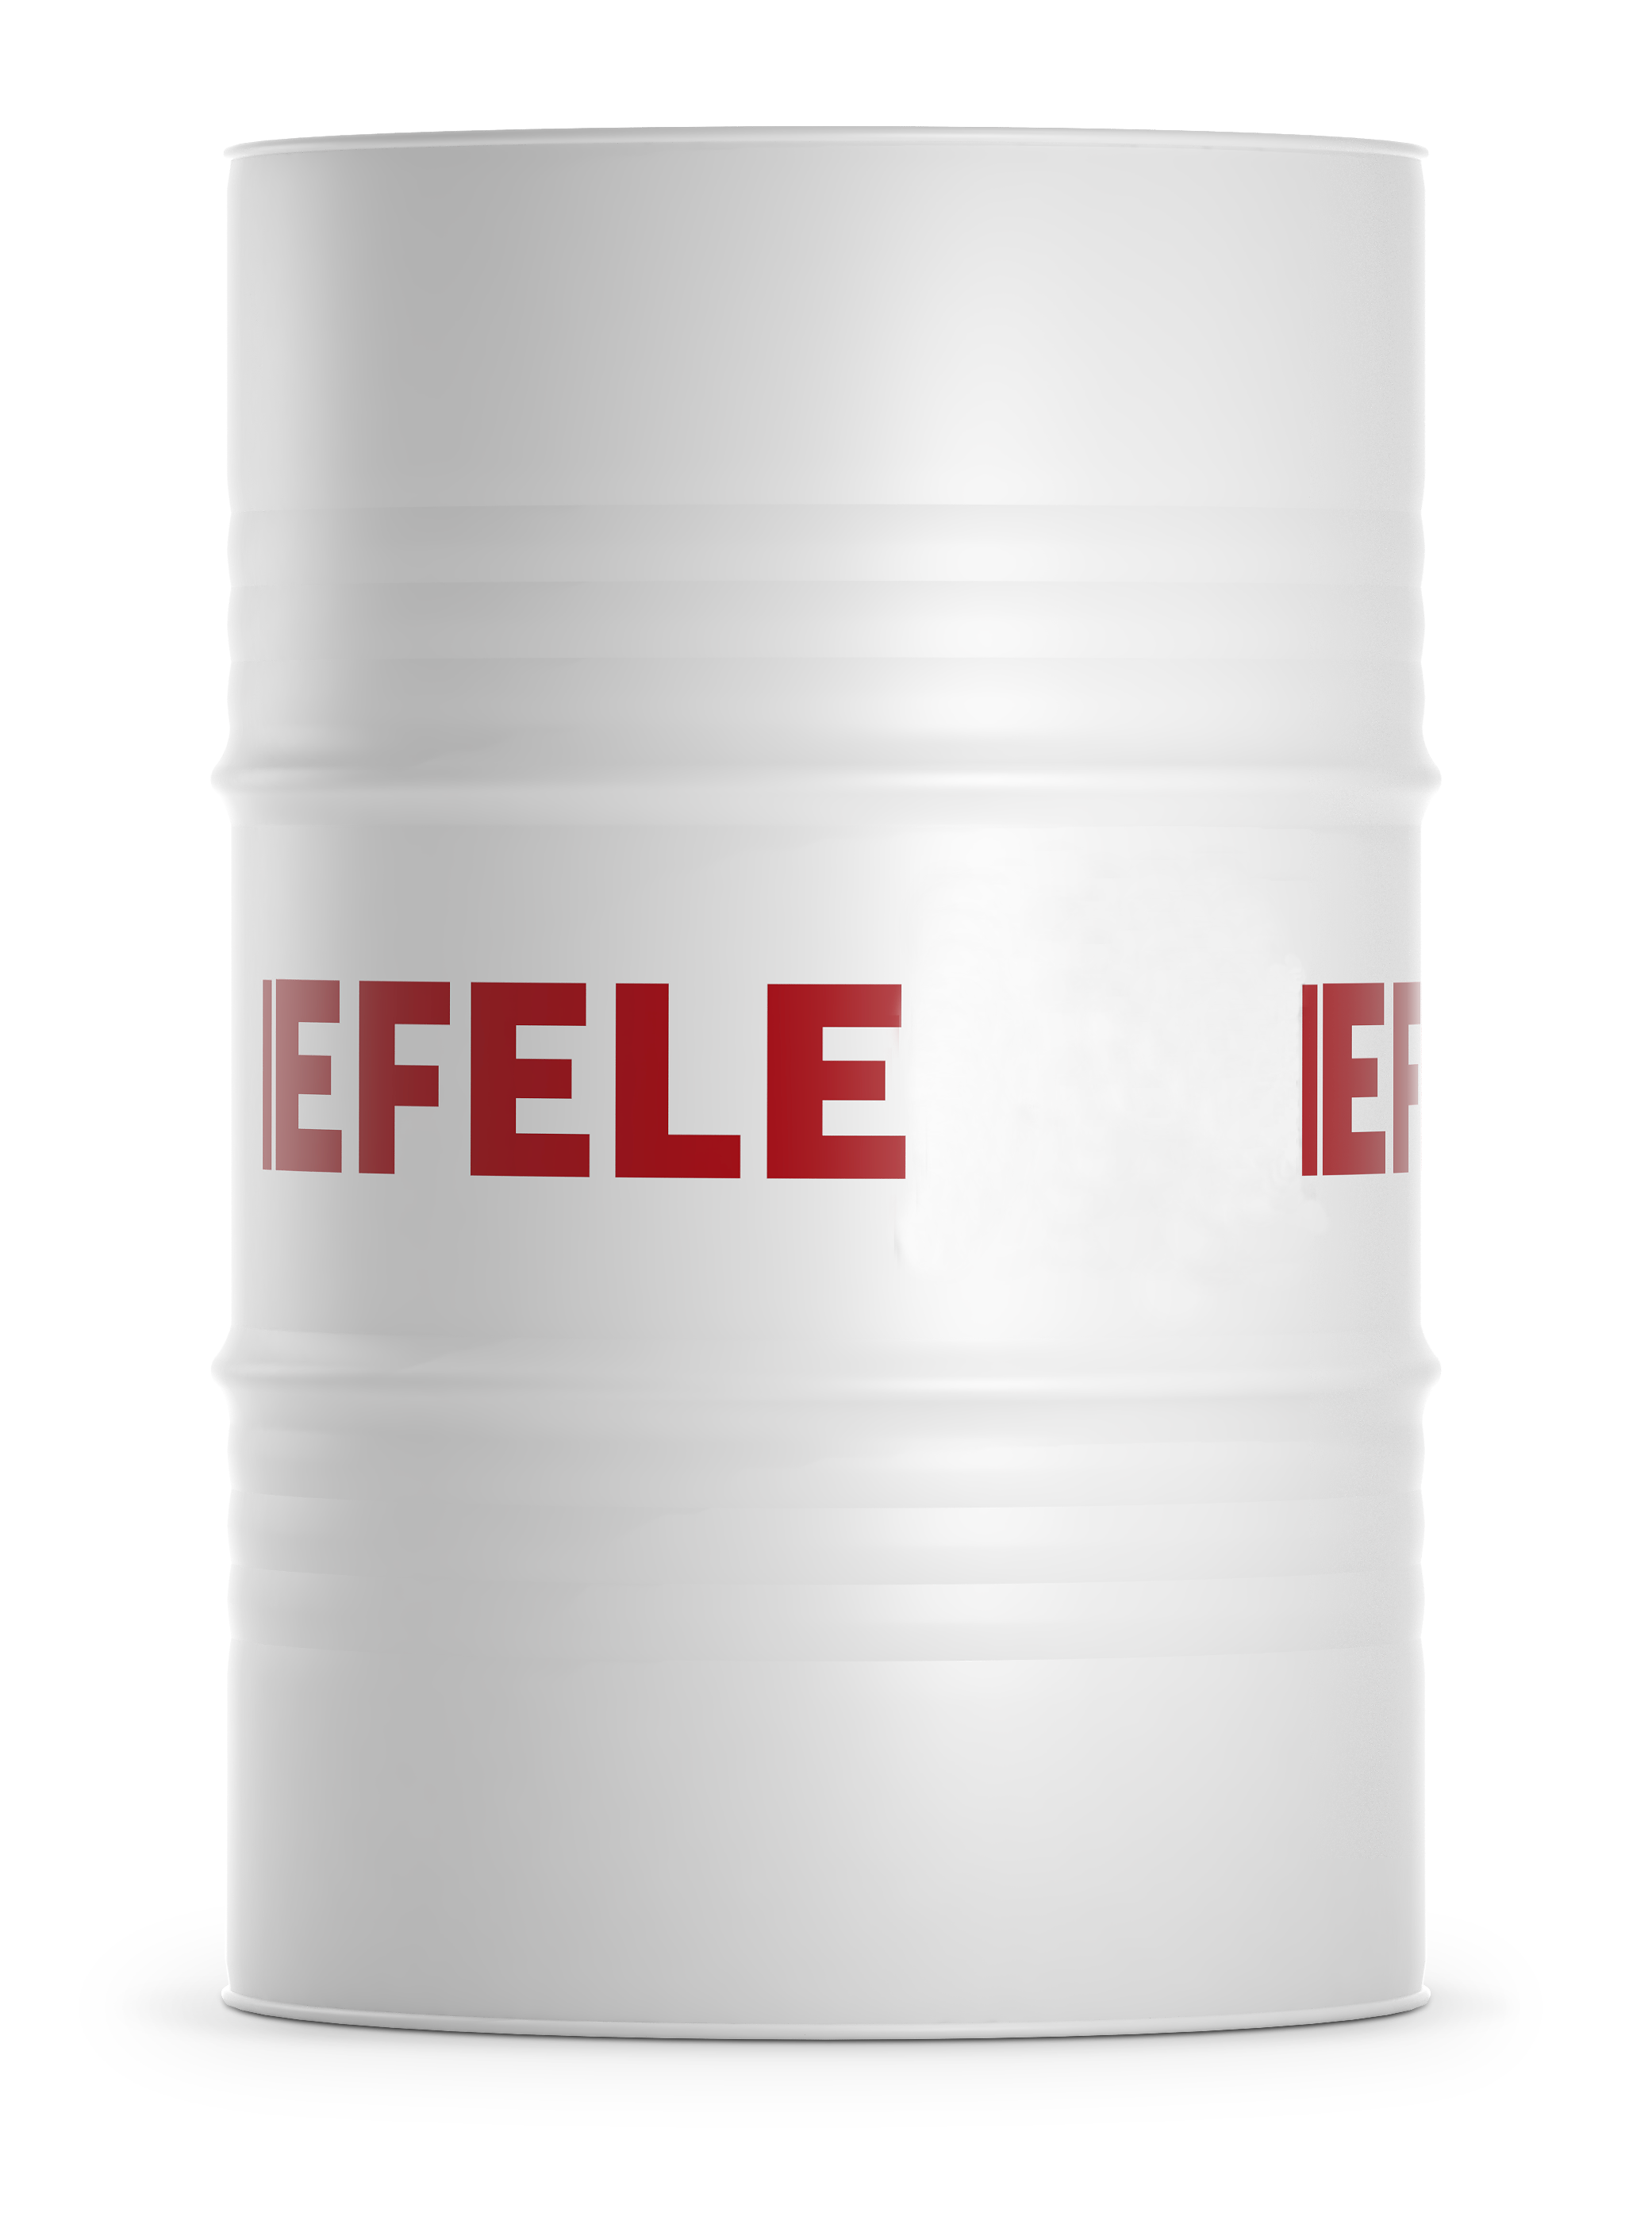 Белое масло с пищевым допуском EFELE MO-842 VG-32 (200 л)